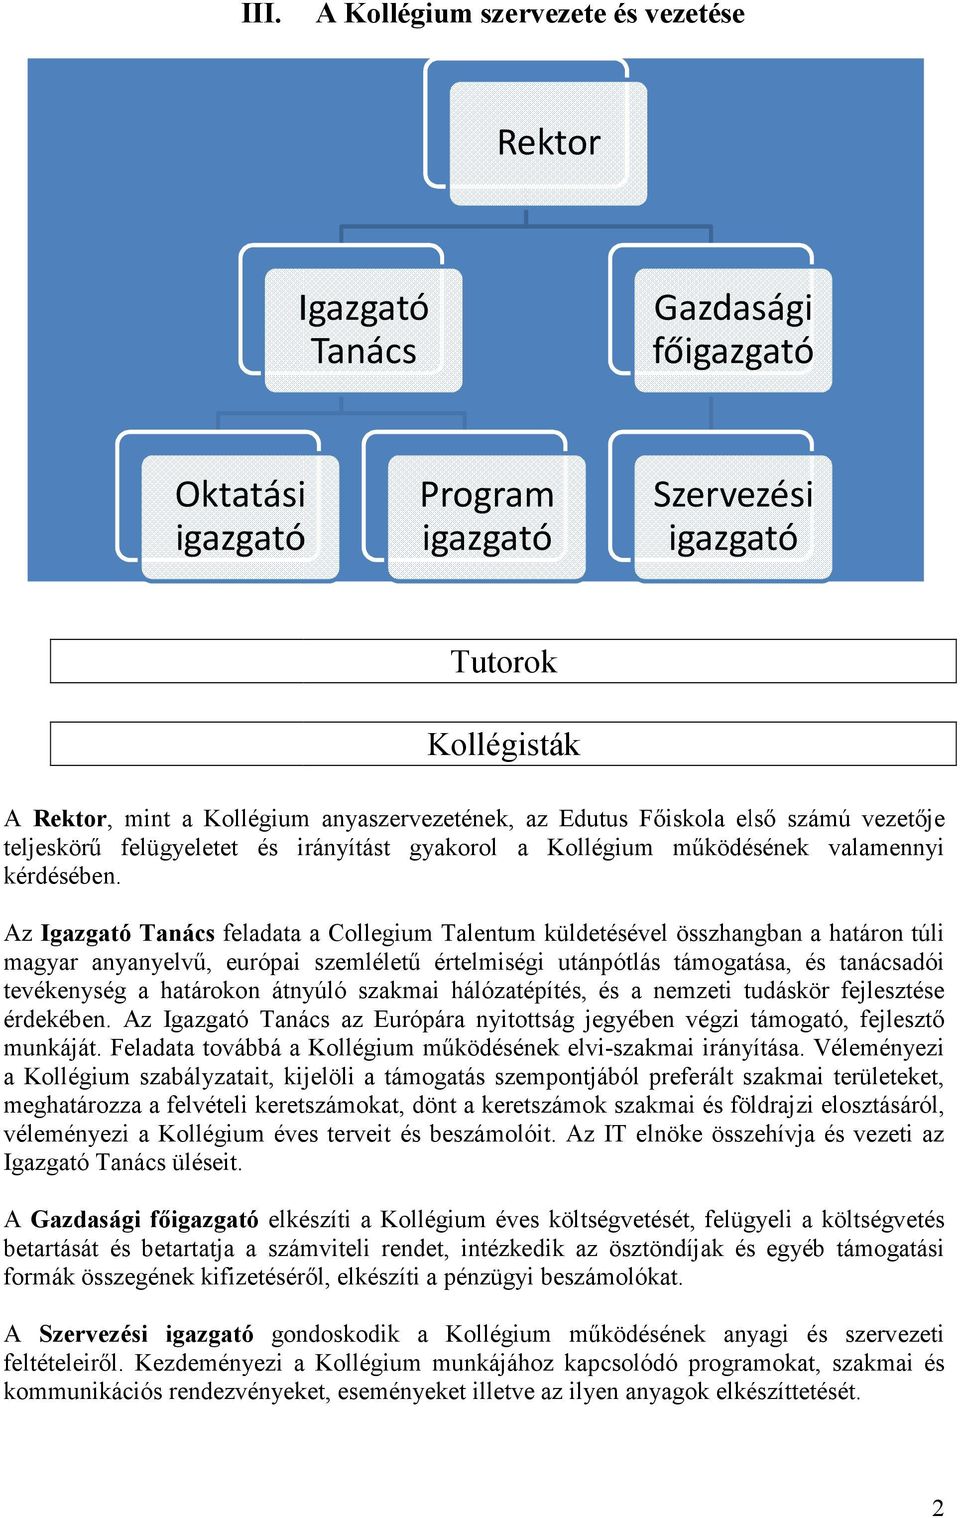 Az Igazgató Tanács feladata a Collegium Talentum küldetésével összhangban a határon túli magyar anyanyelvű, európai szemléletű értelmiségi utánpótlás támogatása, és tanácsadói tevékenység a határokon